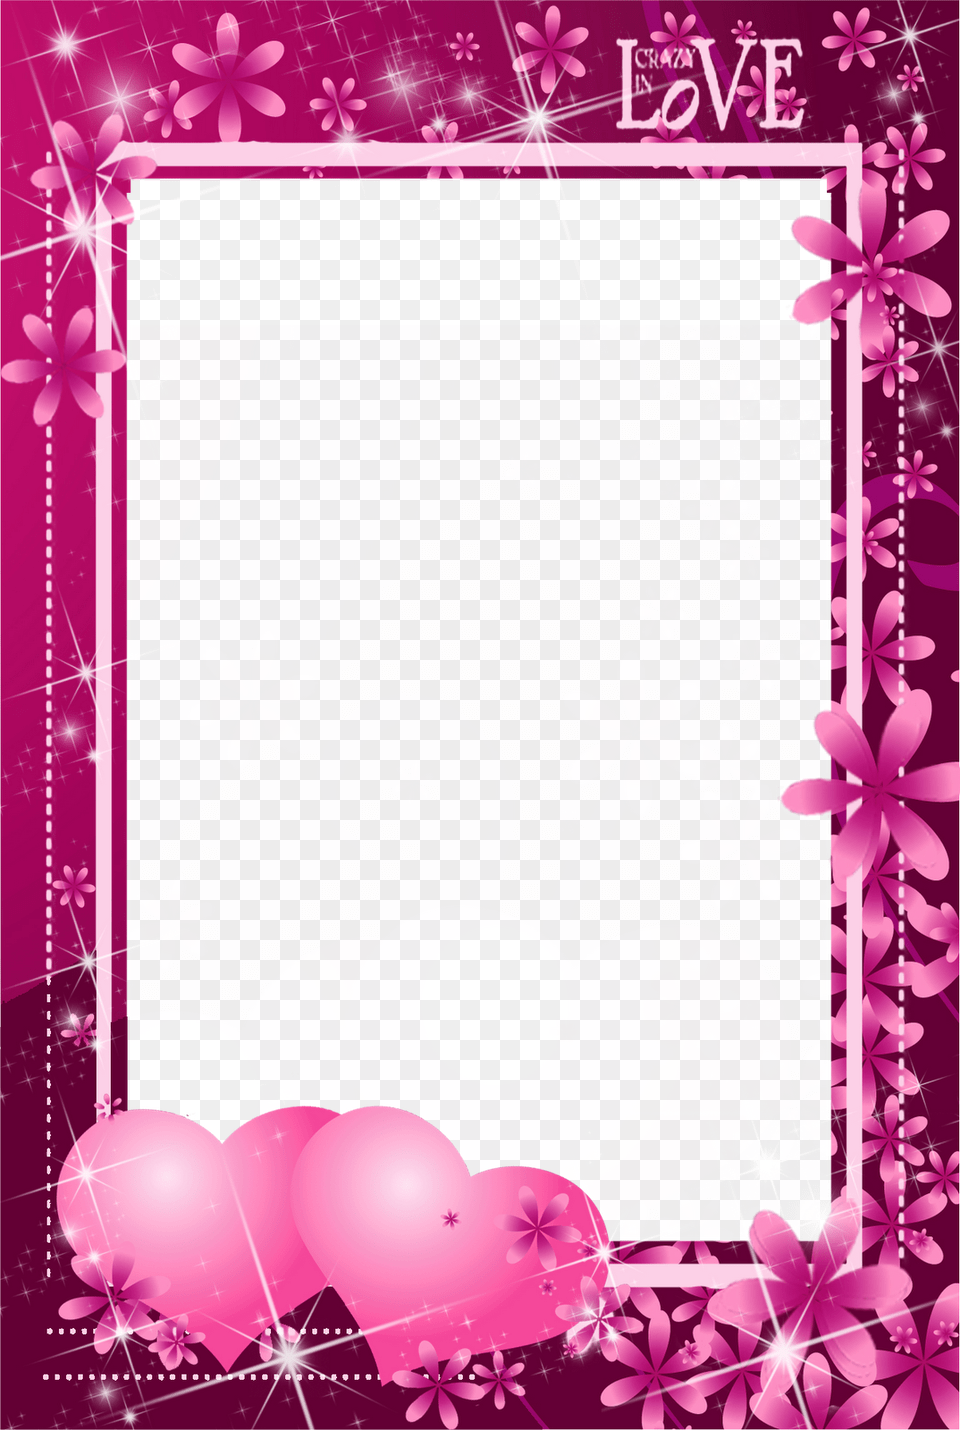 Marcos Amor Imagui Pink Background Frame, Greeting Card, Art, Envelope, Floral Design Free Transparent Png